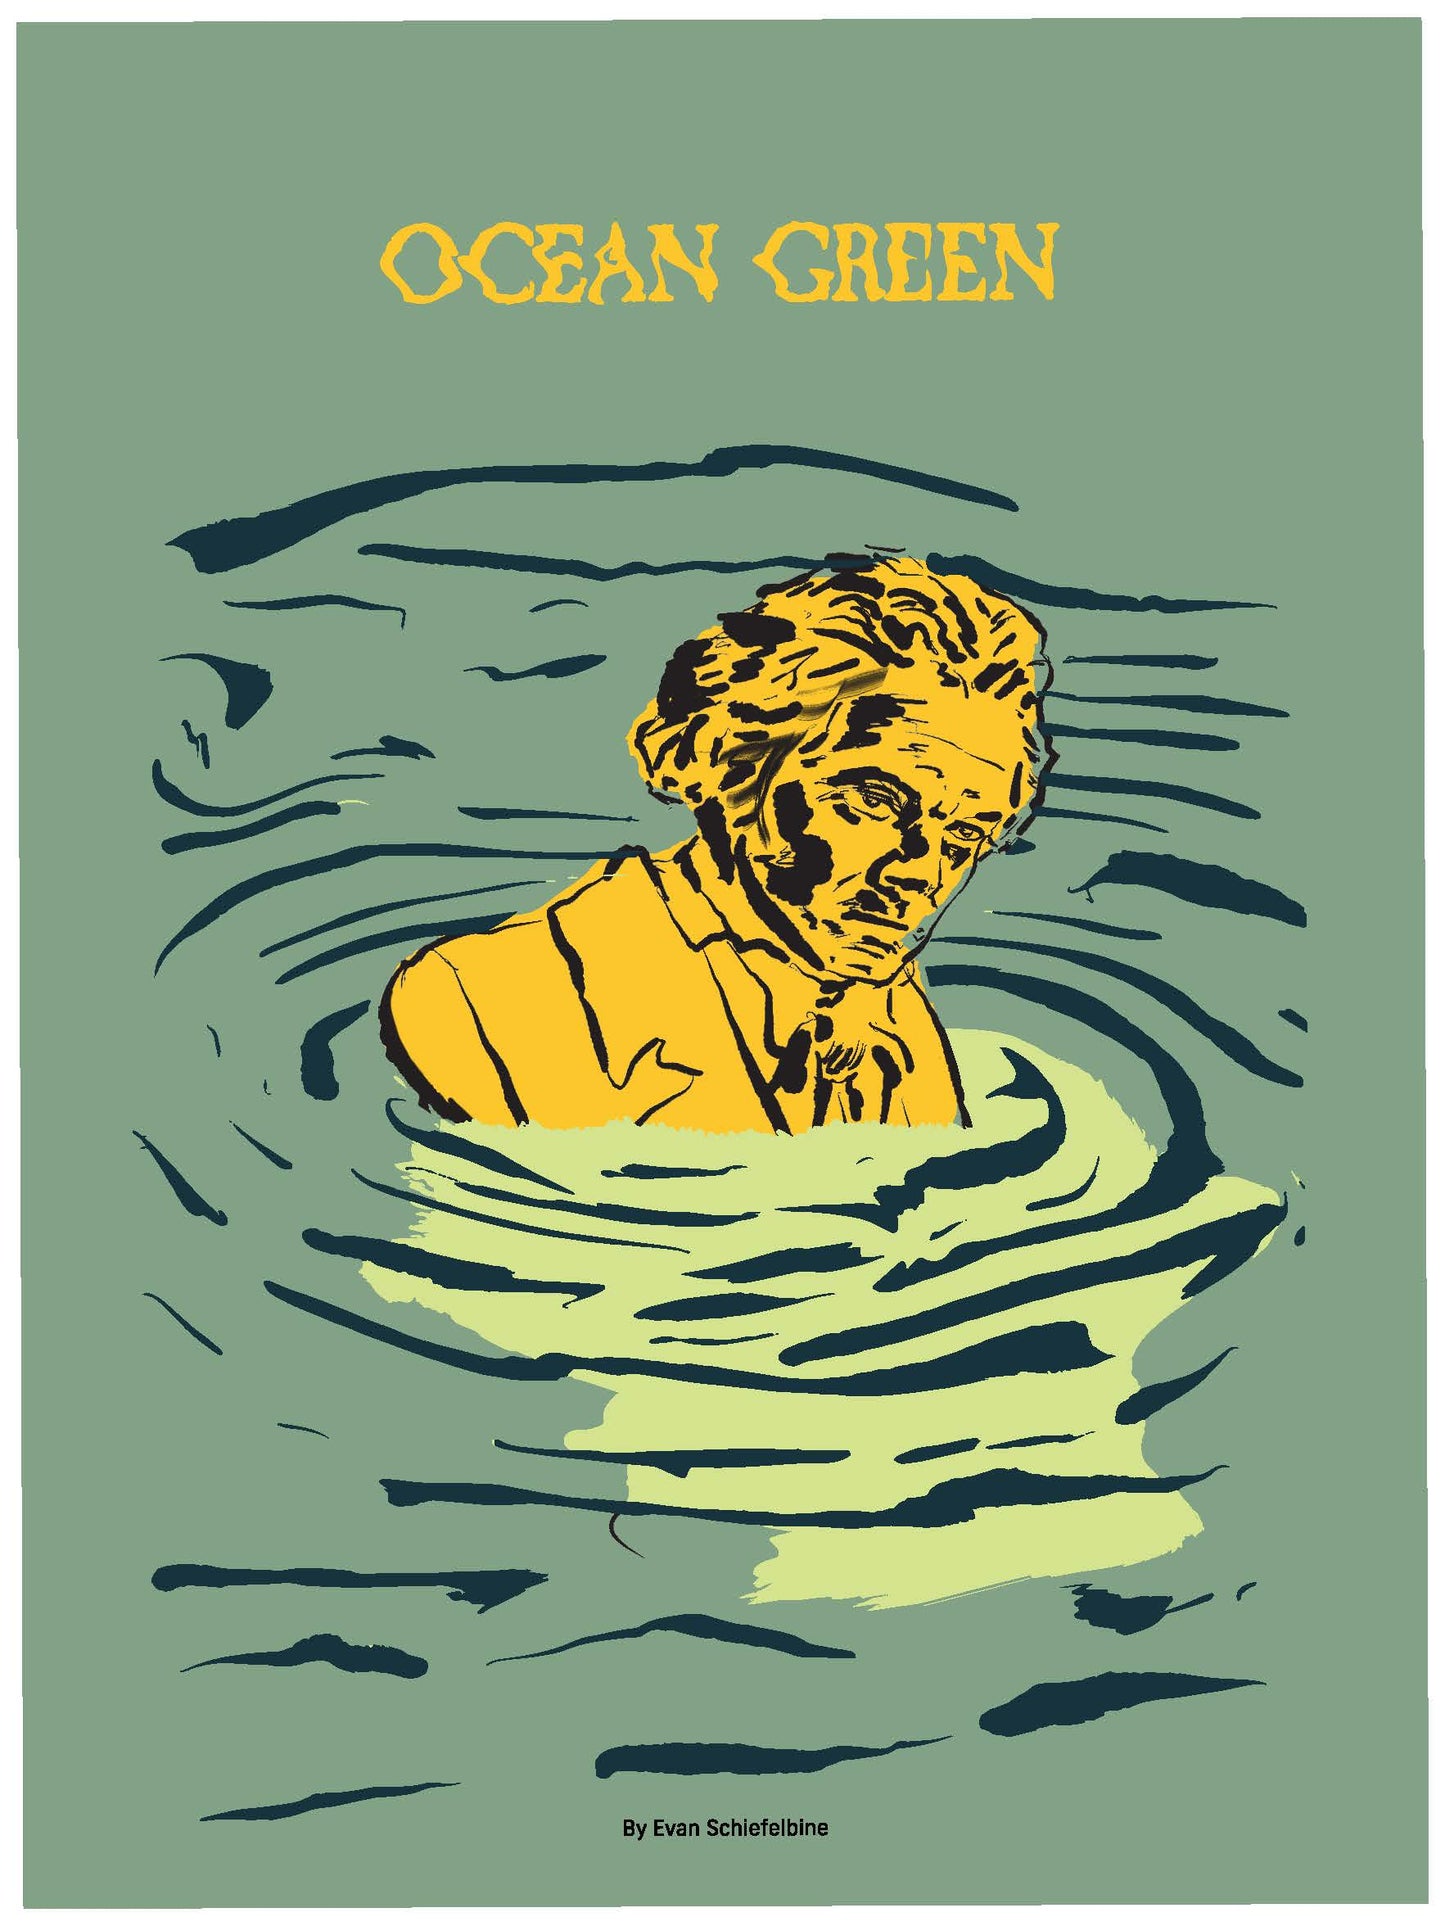 "Ocean Green" by Evan Schiefelbine